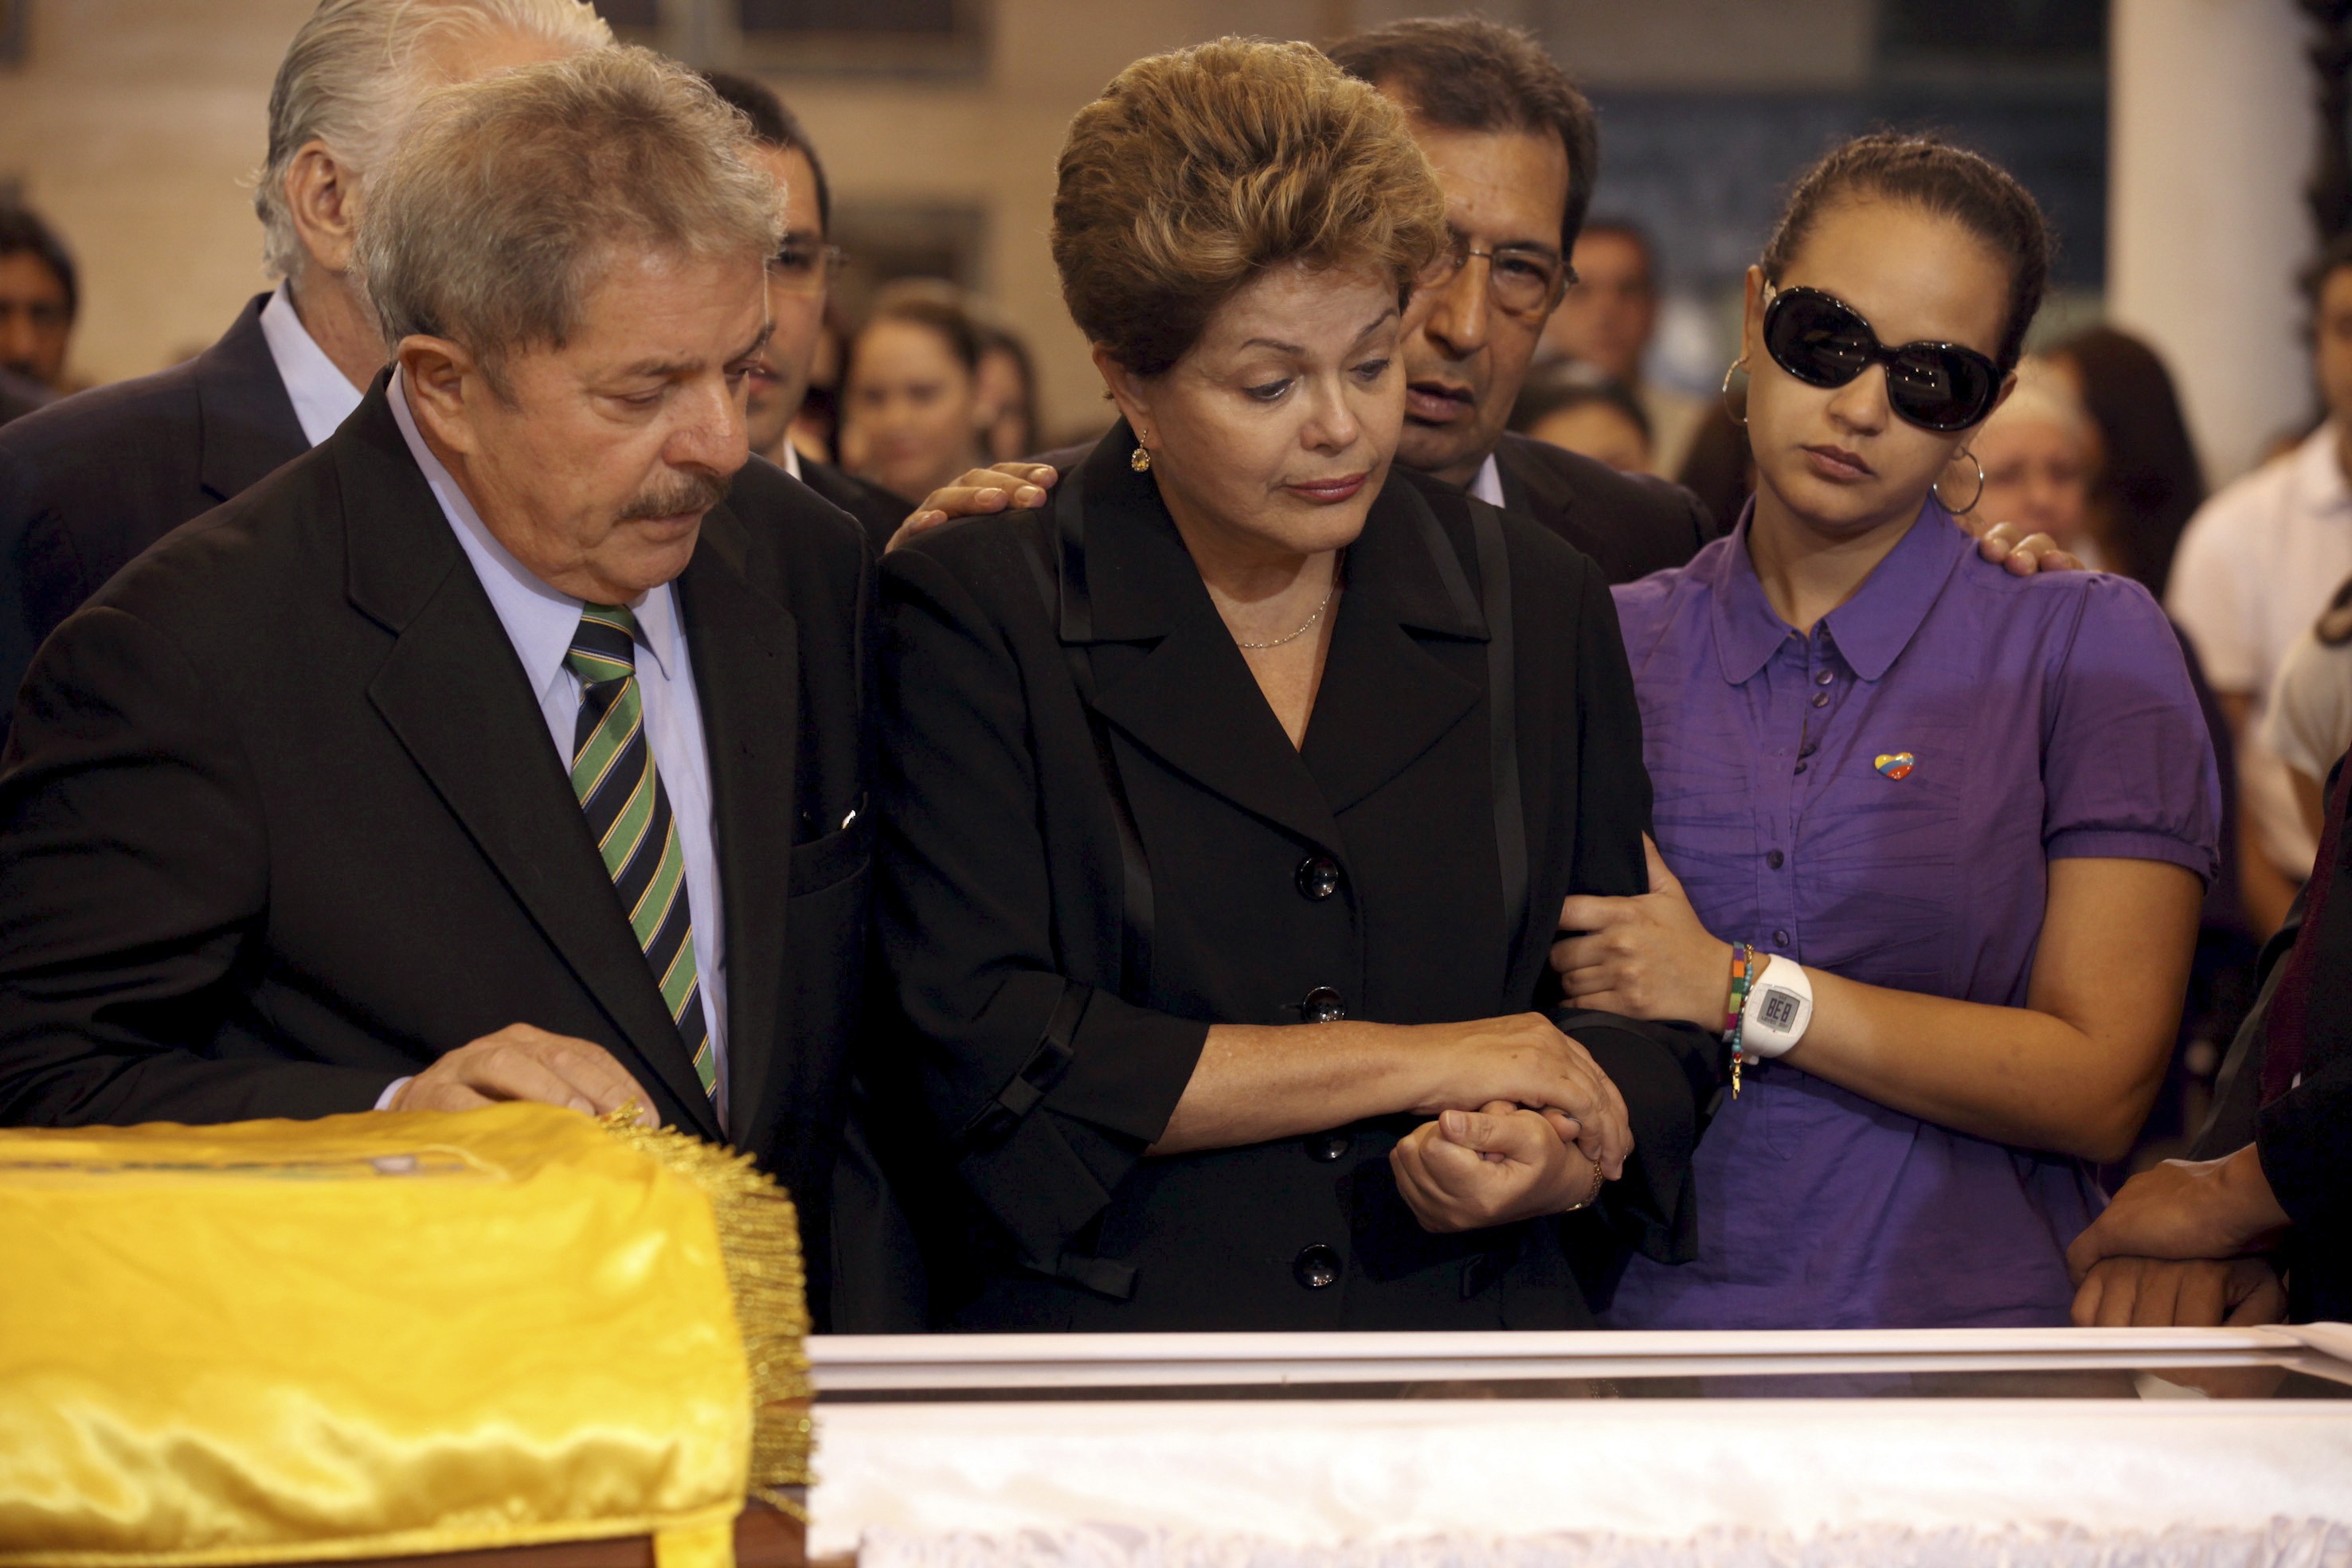 Η δεύτερη κόρη του ηγέτη της Βενεζουέλας, Ρόζα Βιρτζίνια, με την πρόεδρο της Βραζιλίας Ντίλμα Ρούσεφ